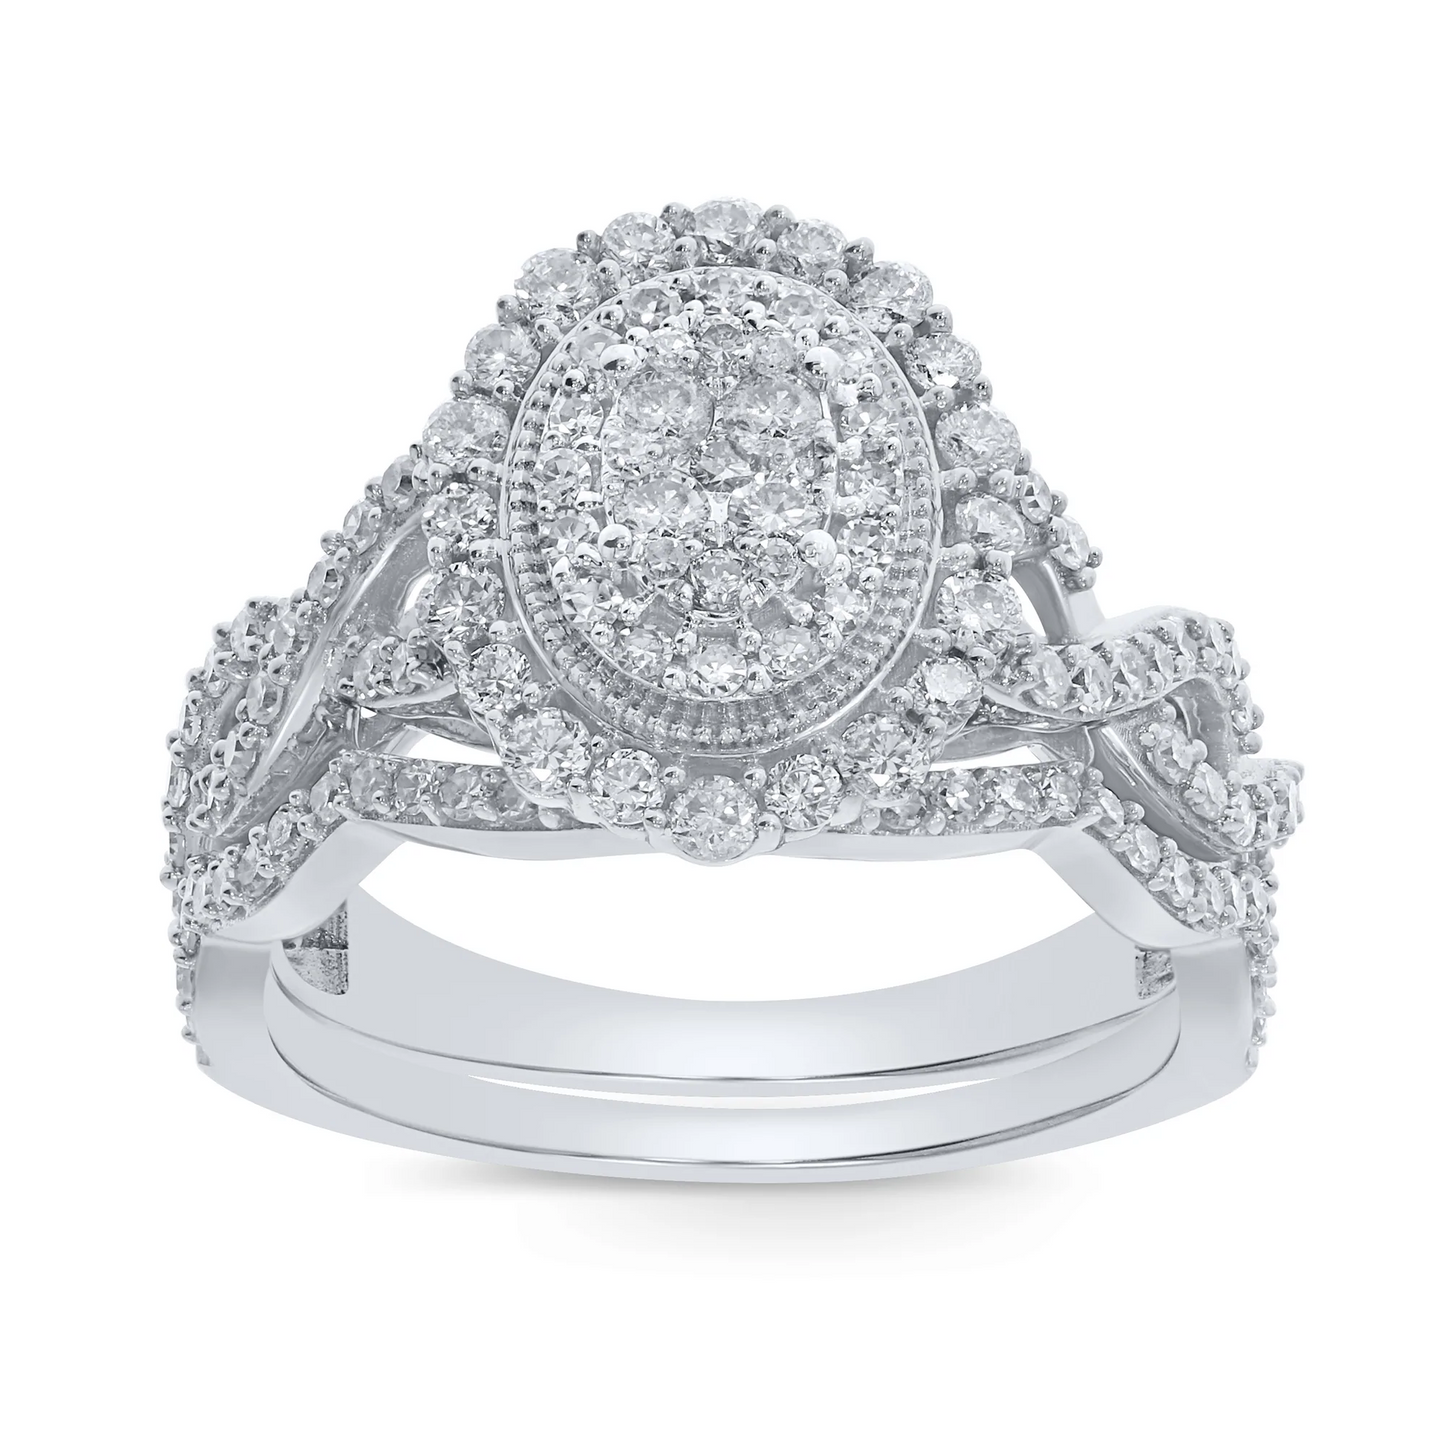 10K WHITE GOLD 1.10 CARAT WOMEN REAL DIAMOND ENGAGEMENT RING WEDDING BAND BRIDAL SET